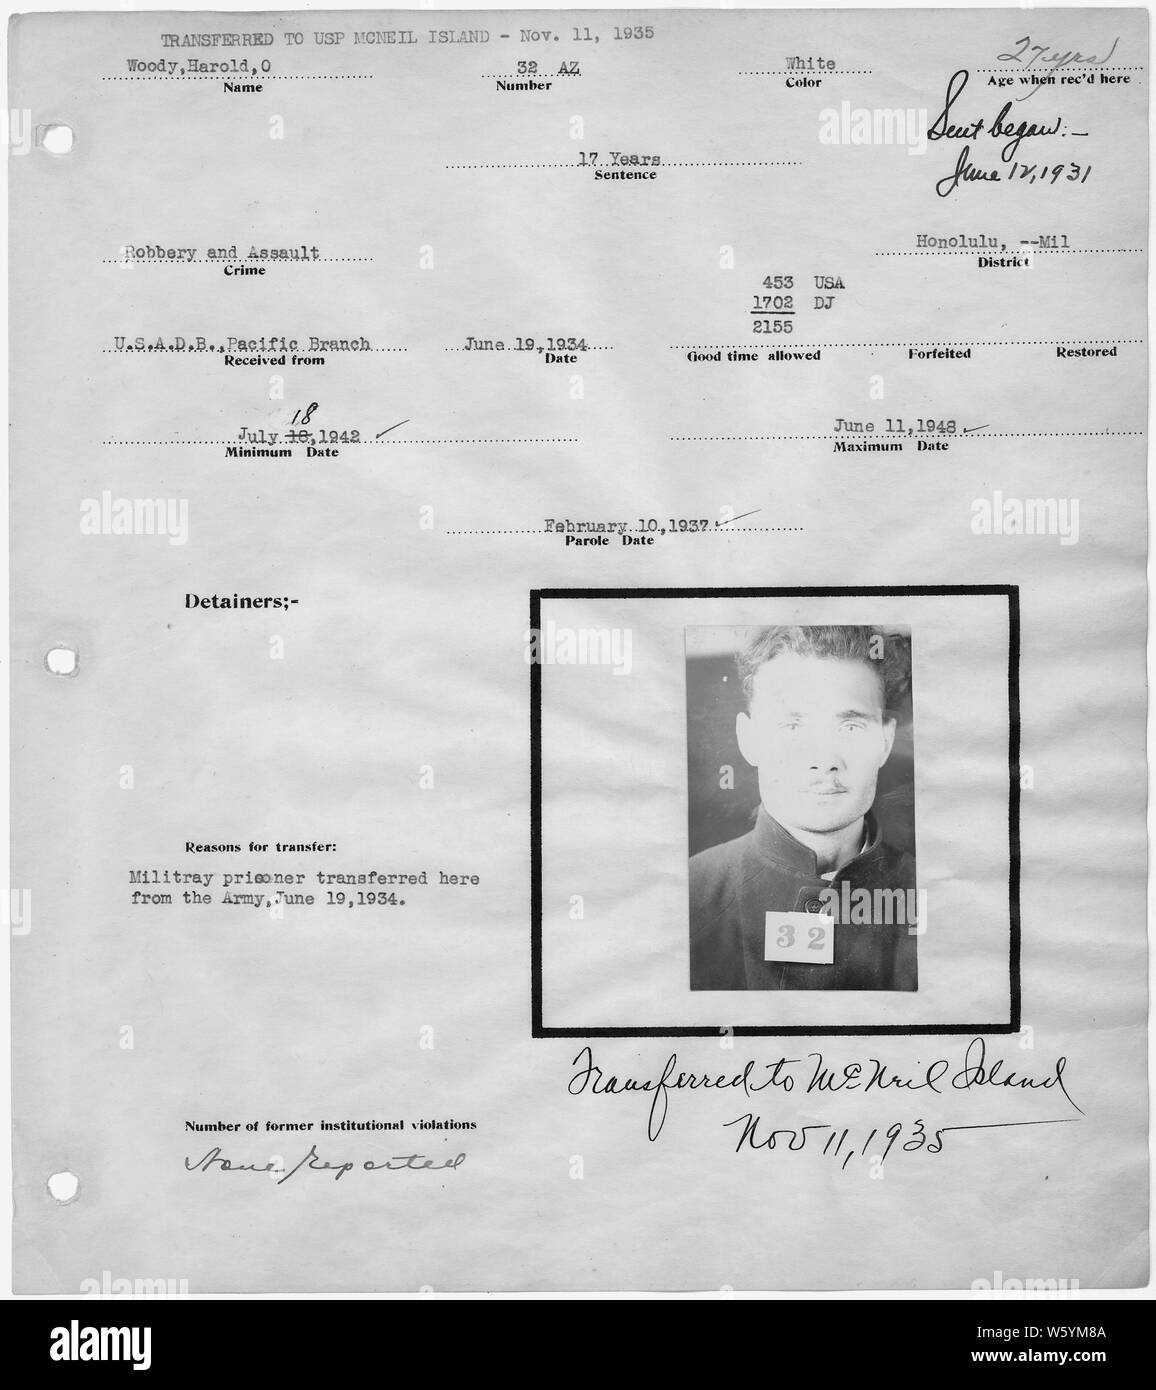 Warden's notebook Seite, mit polizeifoto, von Harold O. Woody, 32-AZ. Stockfoto